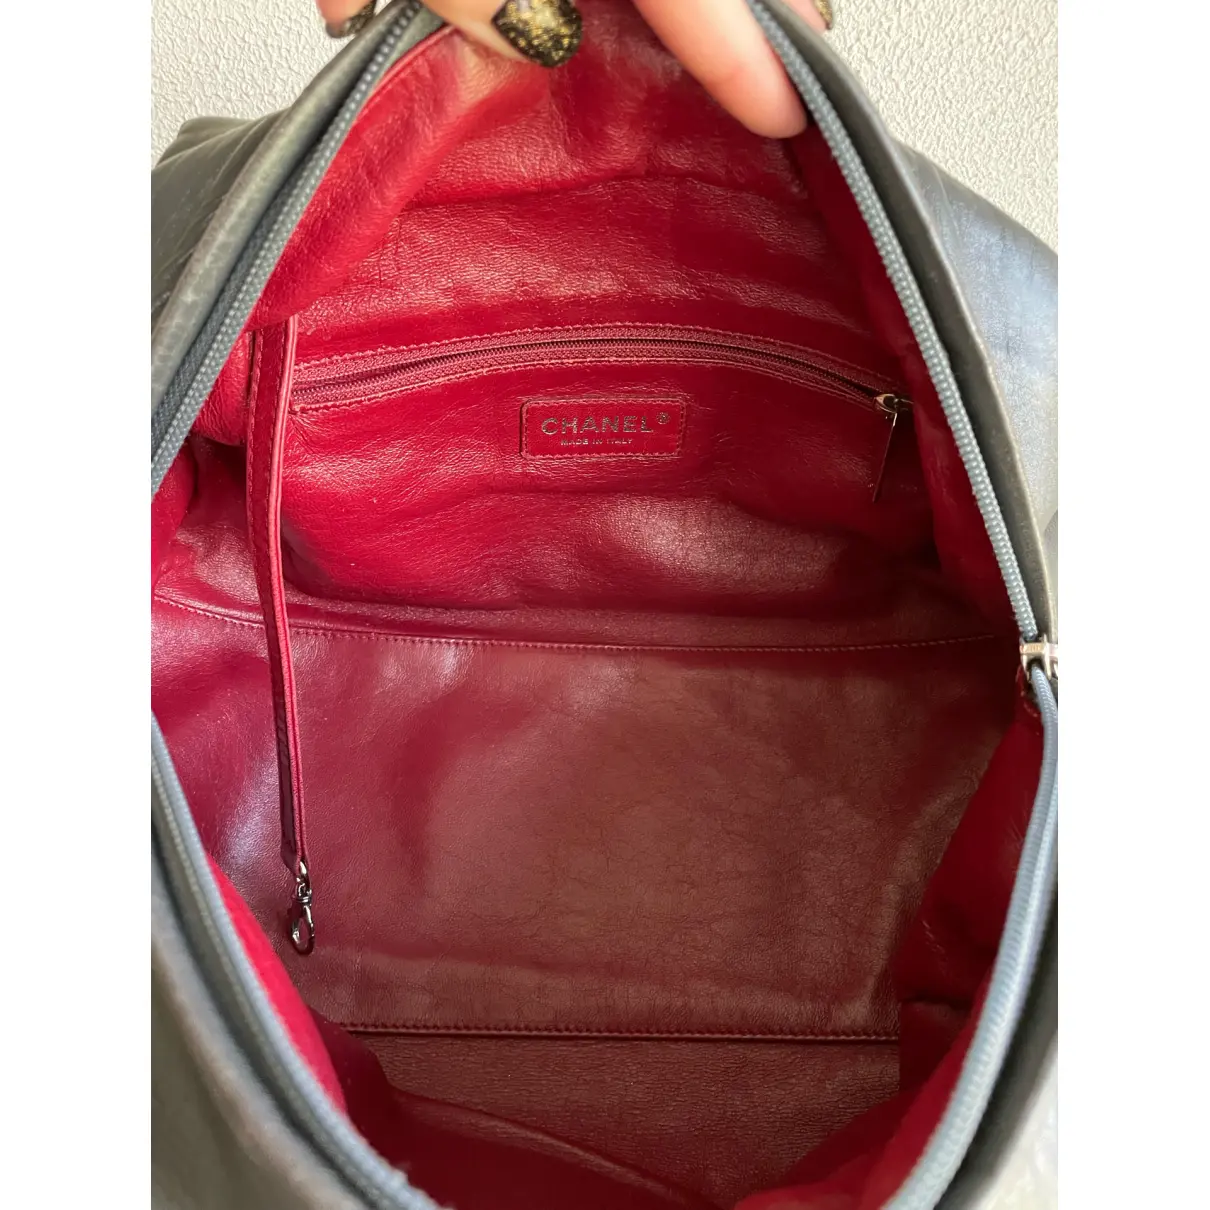 Bowling Bag leather handbag Chanel